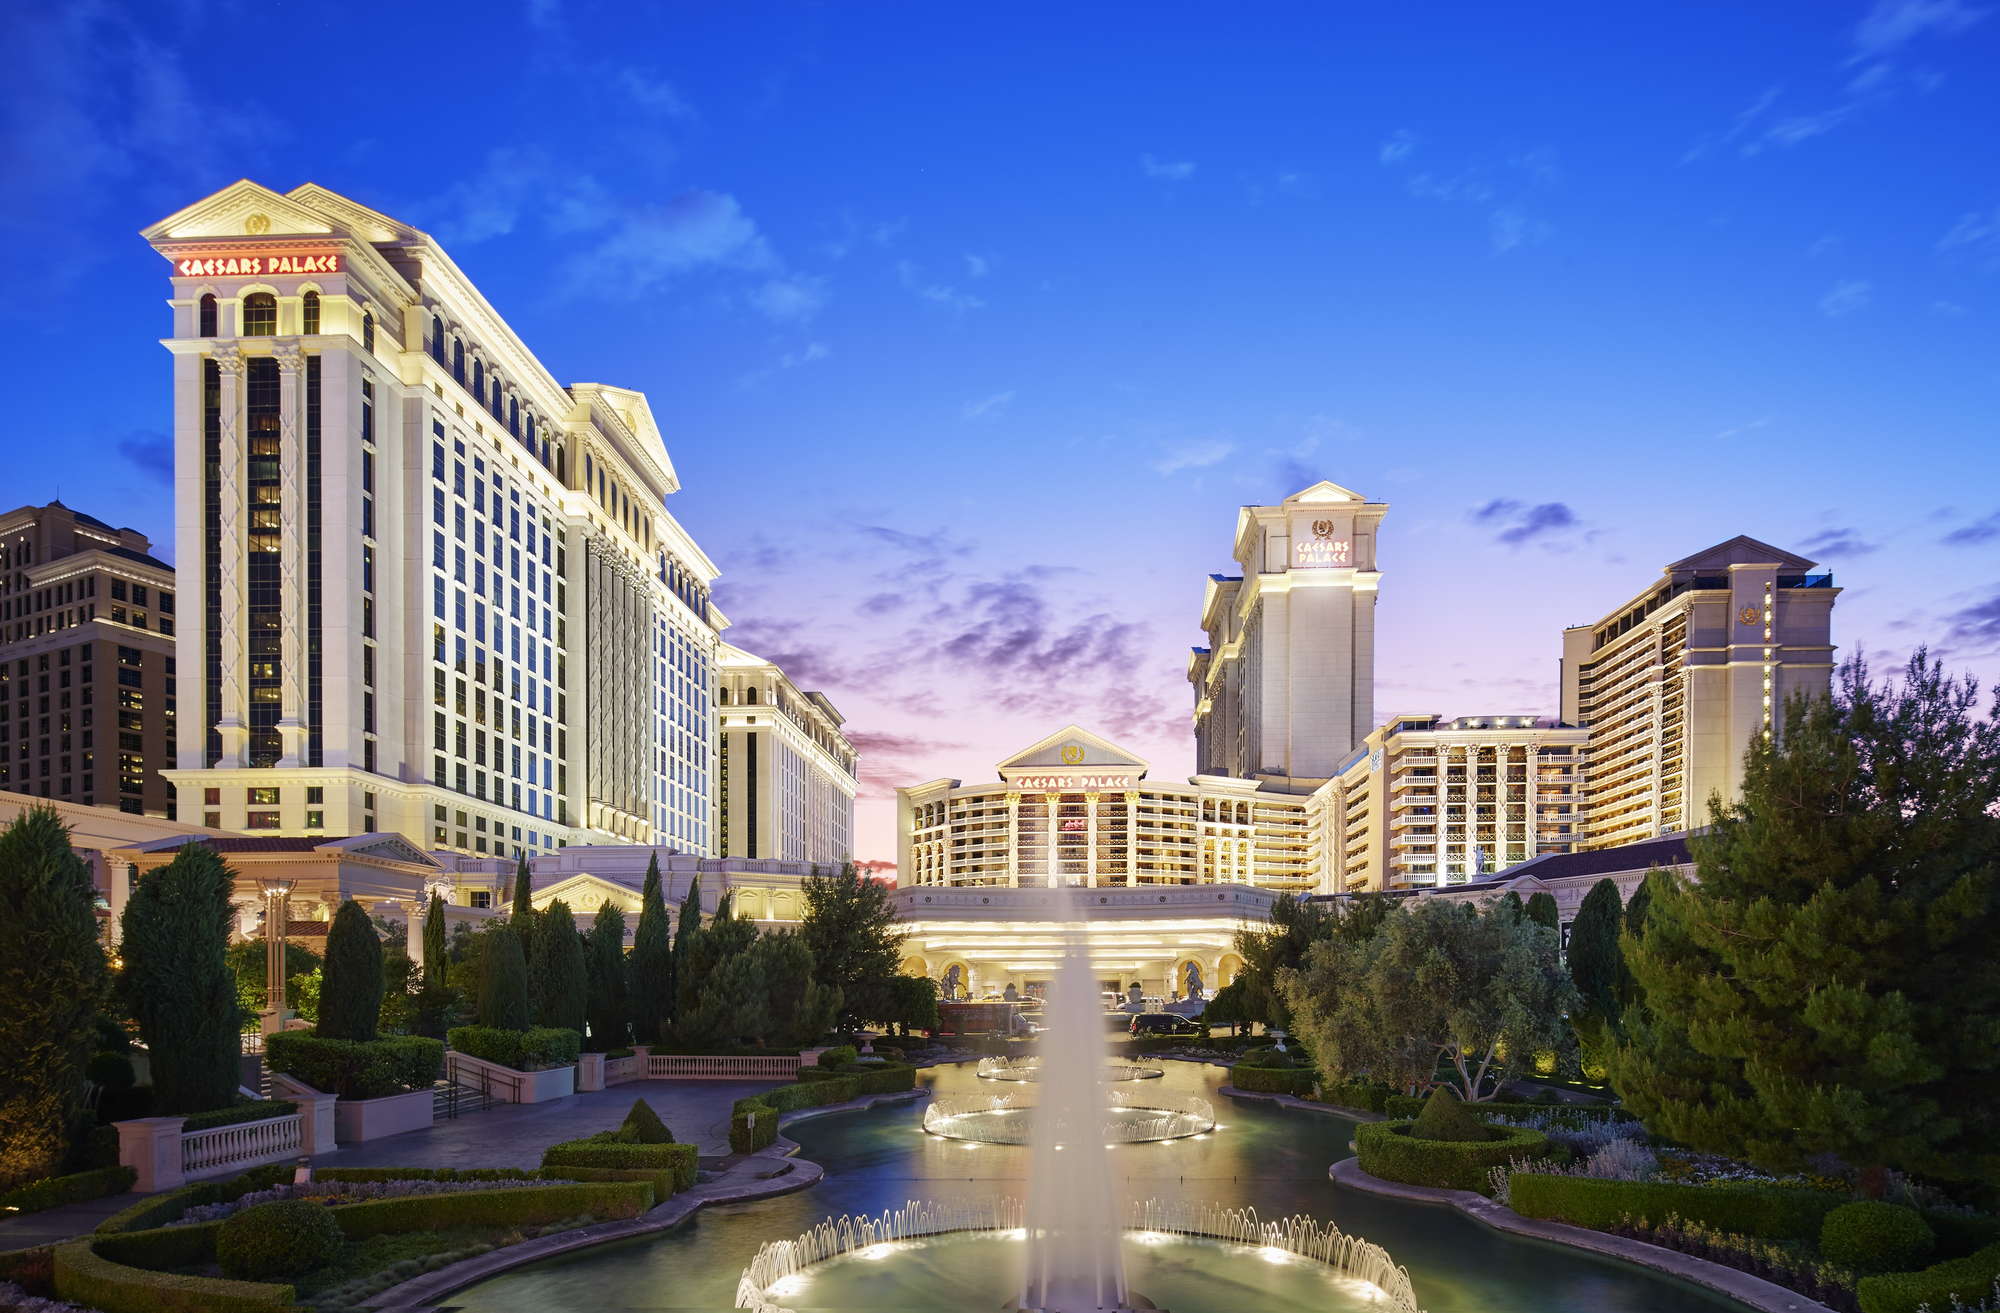 Dream palace casino reviews